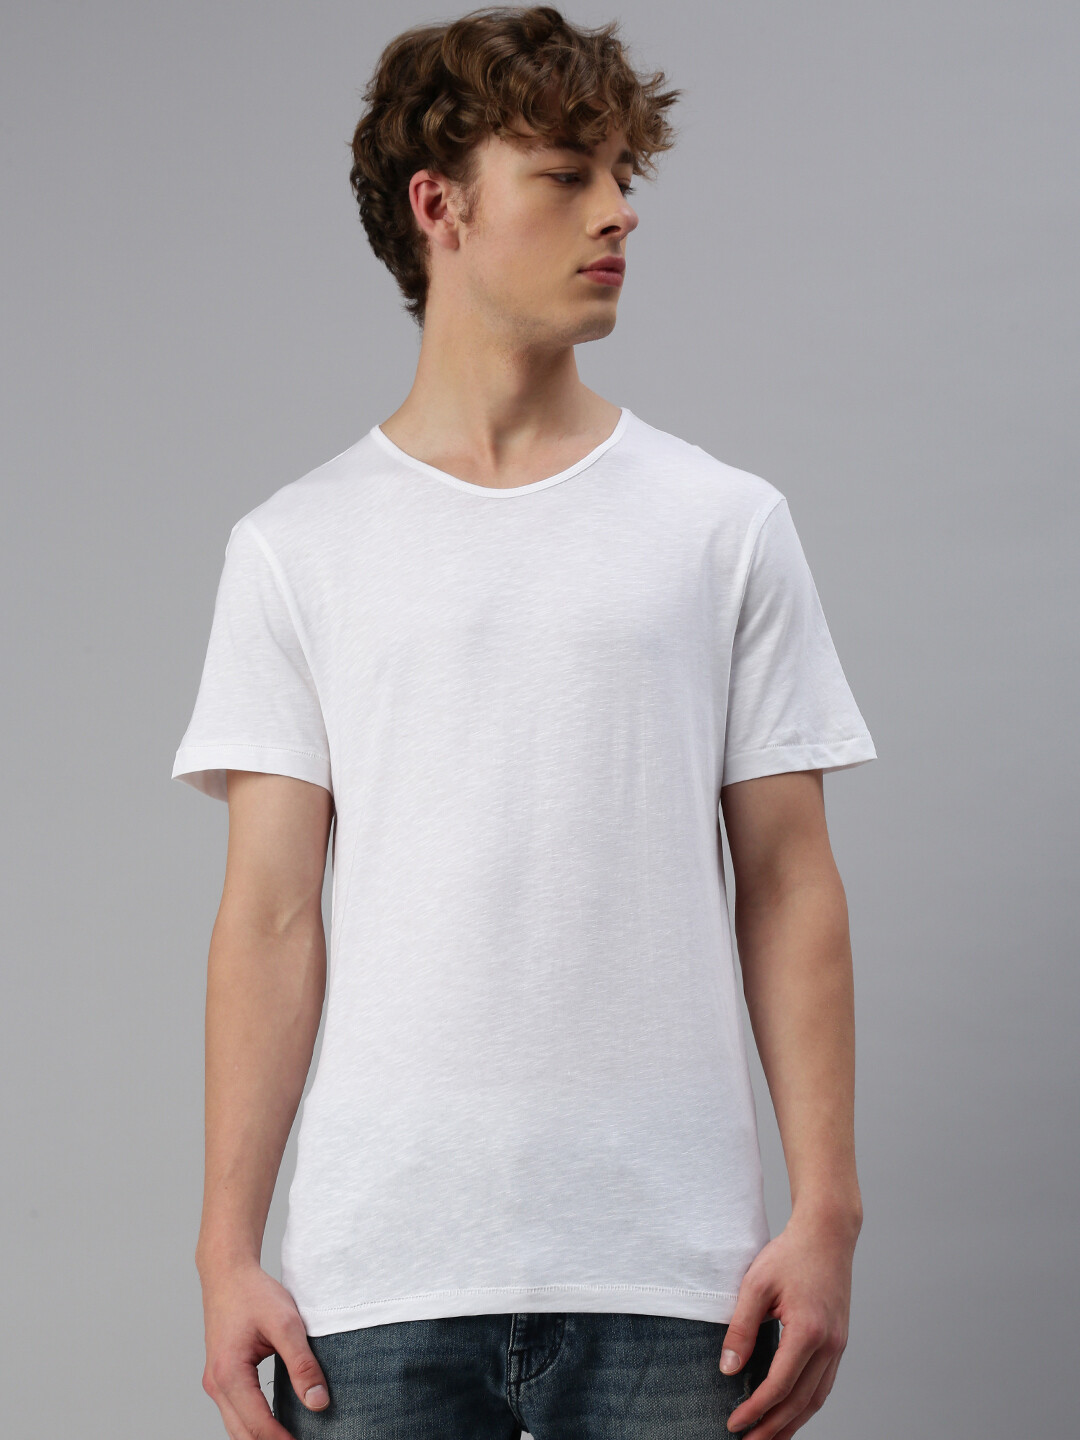 Switcher rundhals Herren T-Shirt bio Damon, Farbe: Weiss/Blanc 01